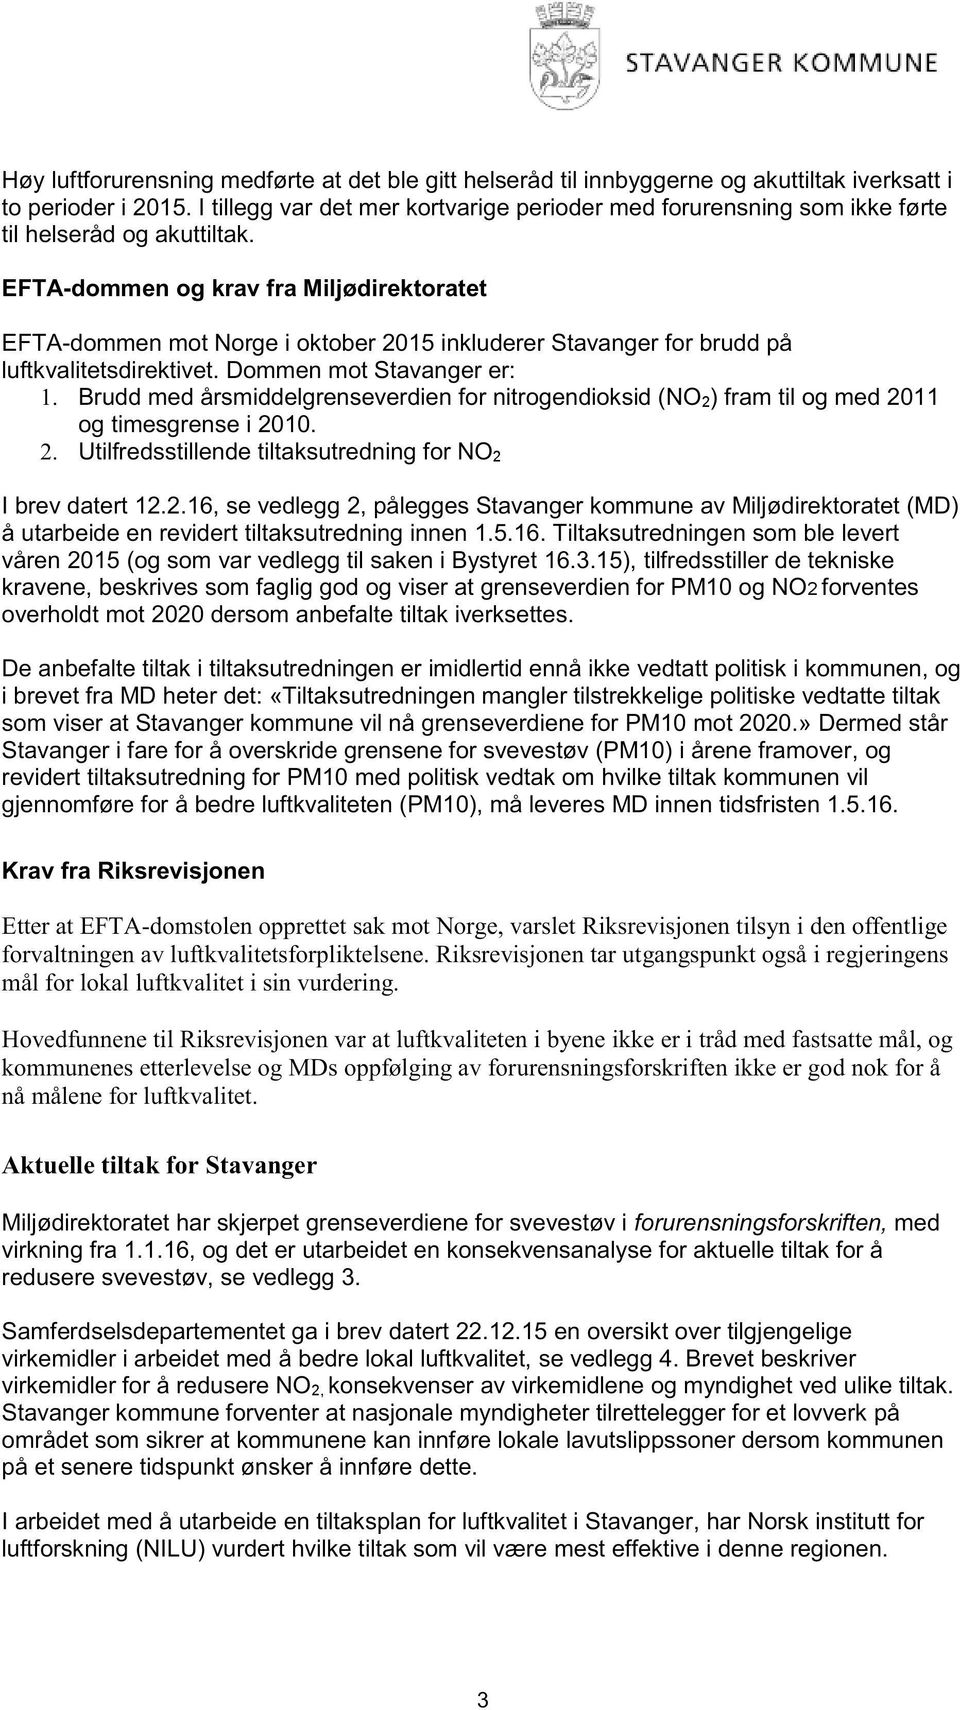 EFTA - dommen og krav fra Miljødirektoratet EFTA - d ommen mot Norge i oktober 2015 inkluderer Stavanger for brudd på luftkvalitetsdirektivet. Dommen mot Stavanger er: 1.